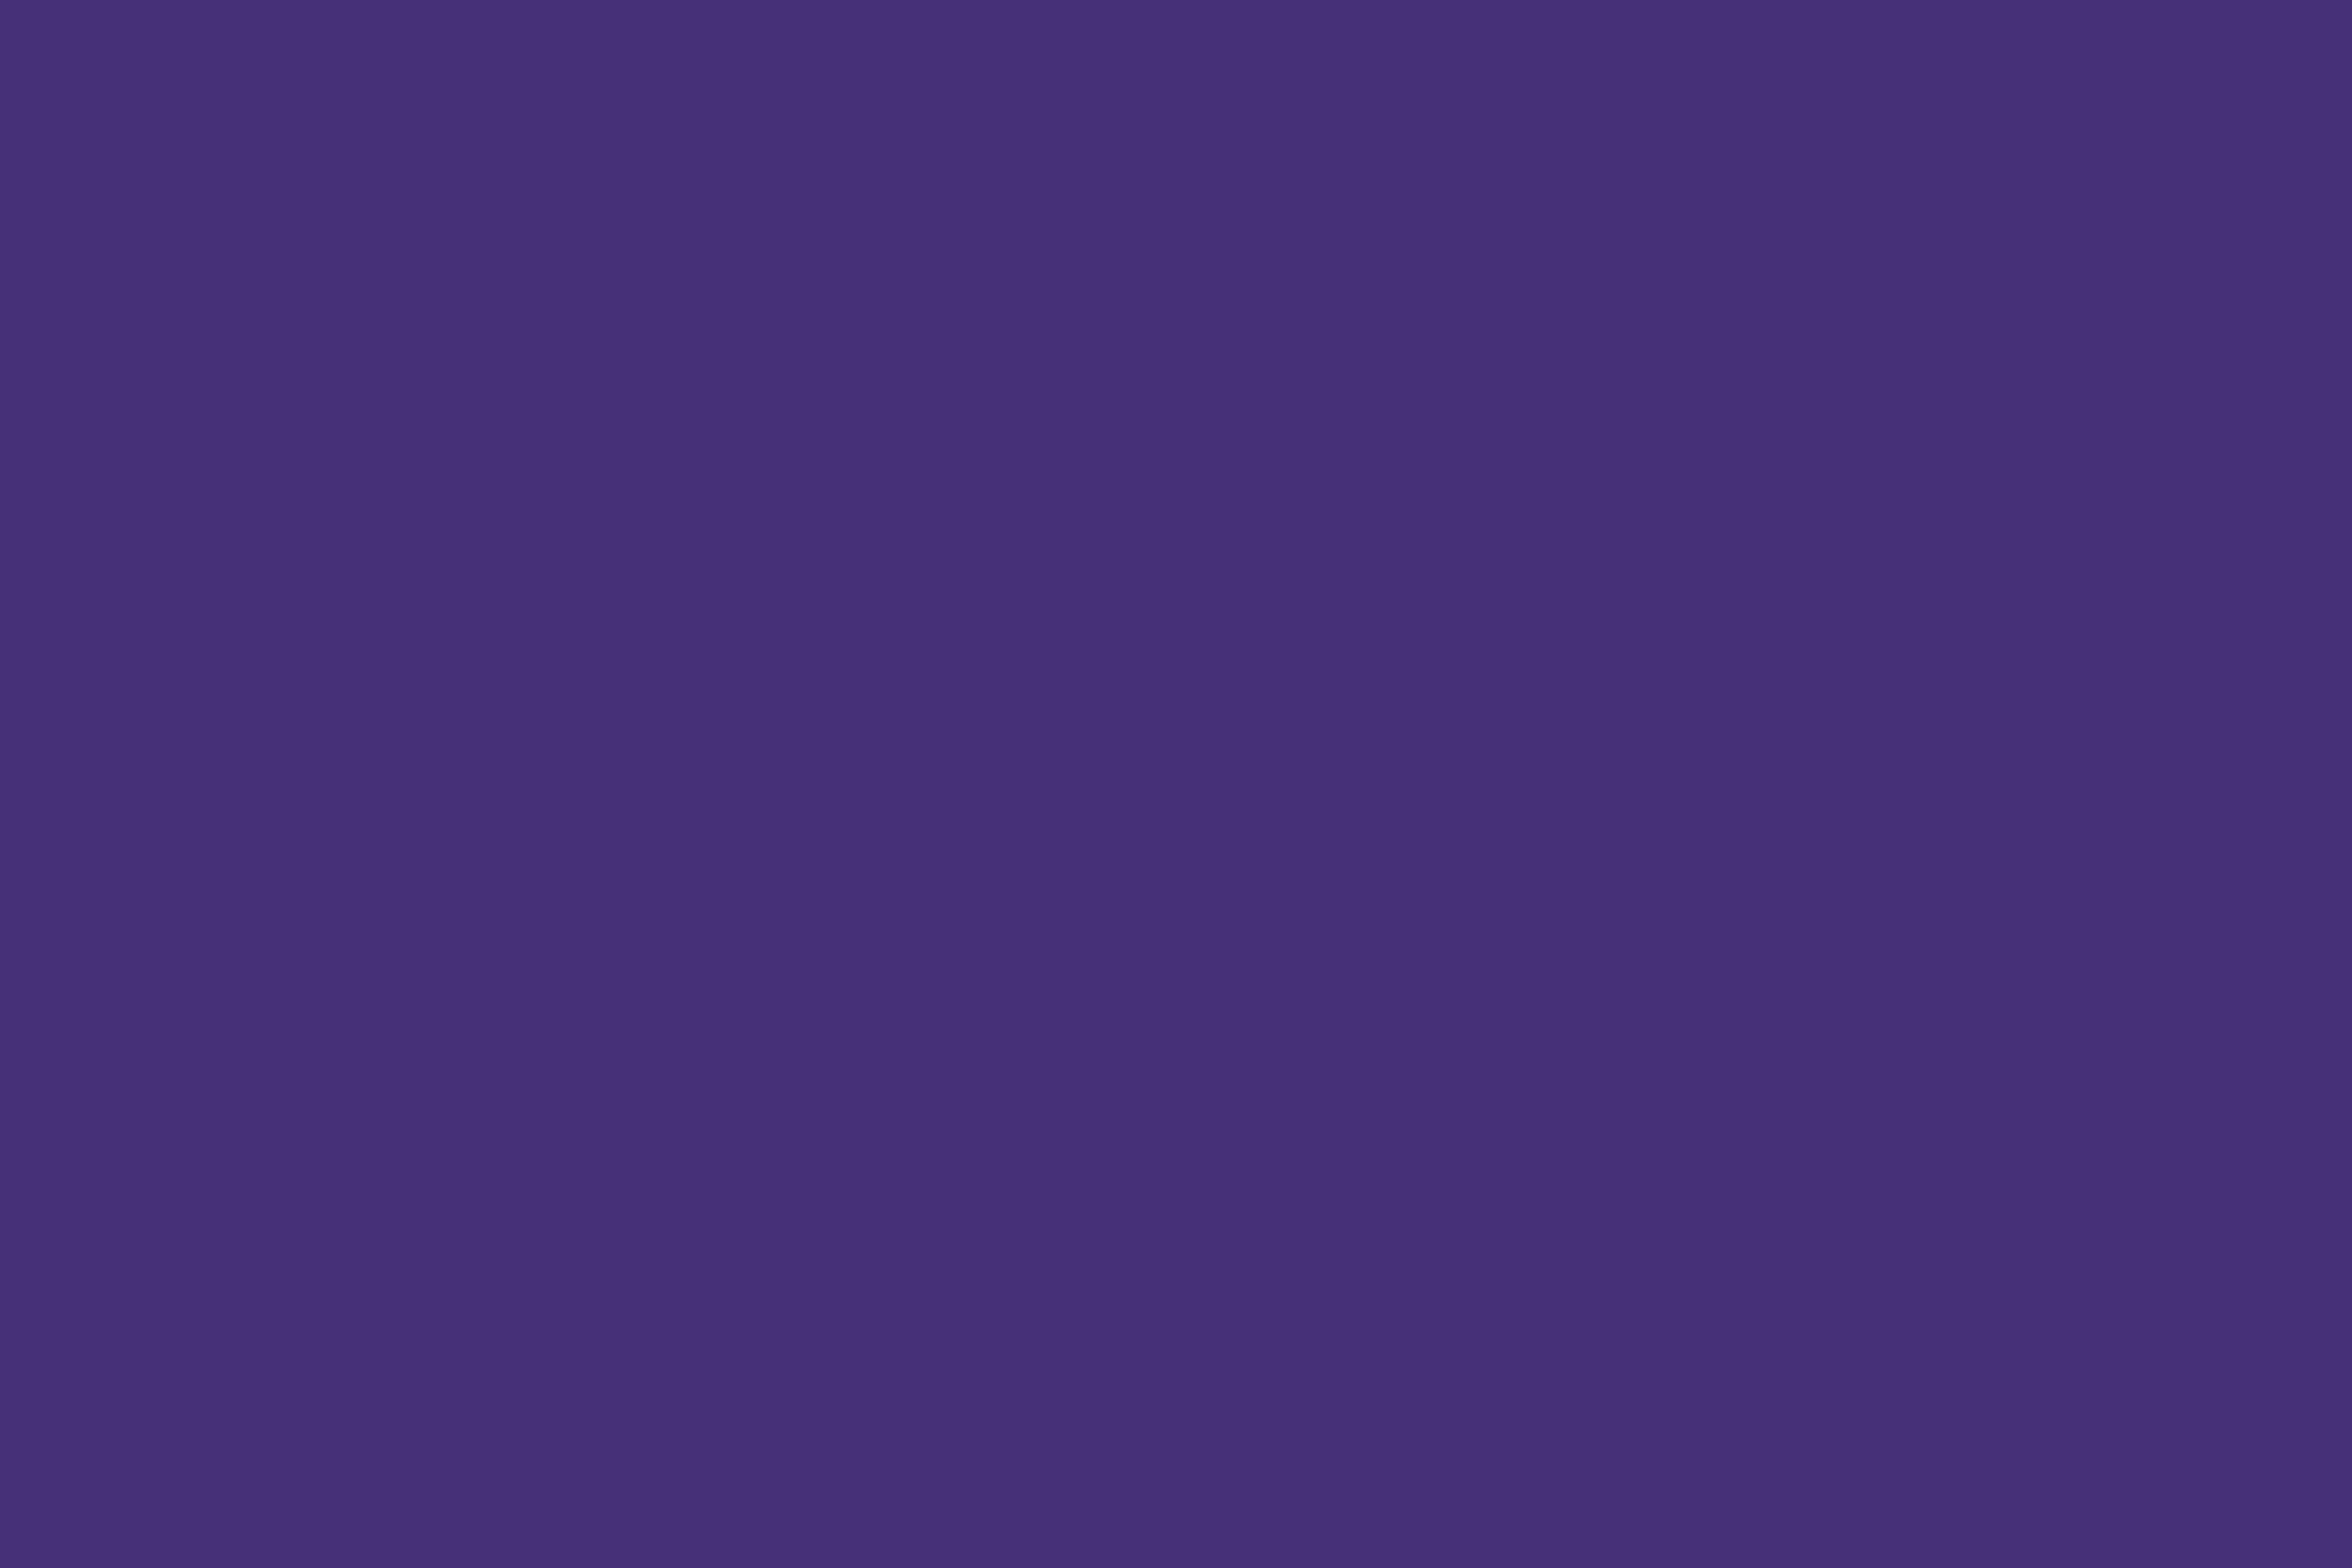 sfsu purple